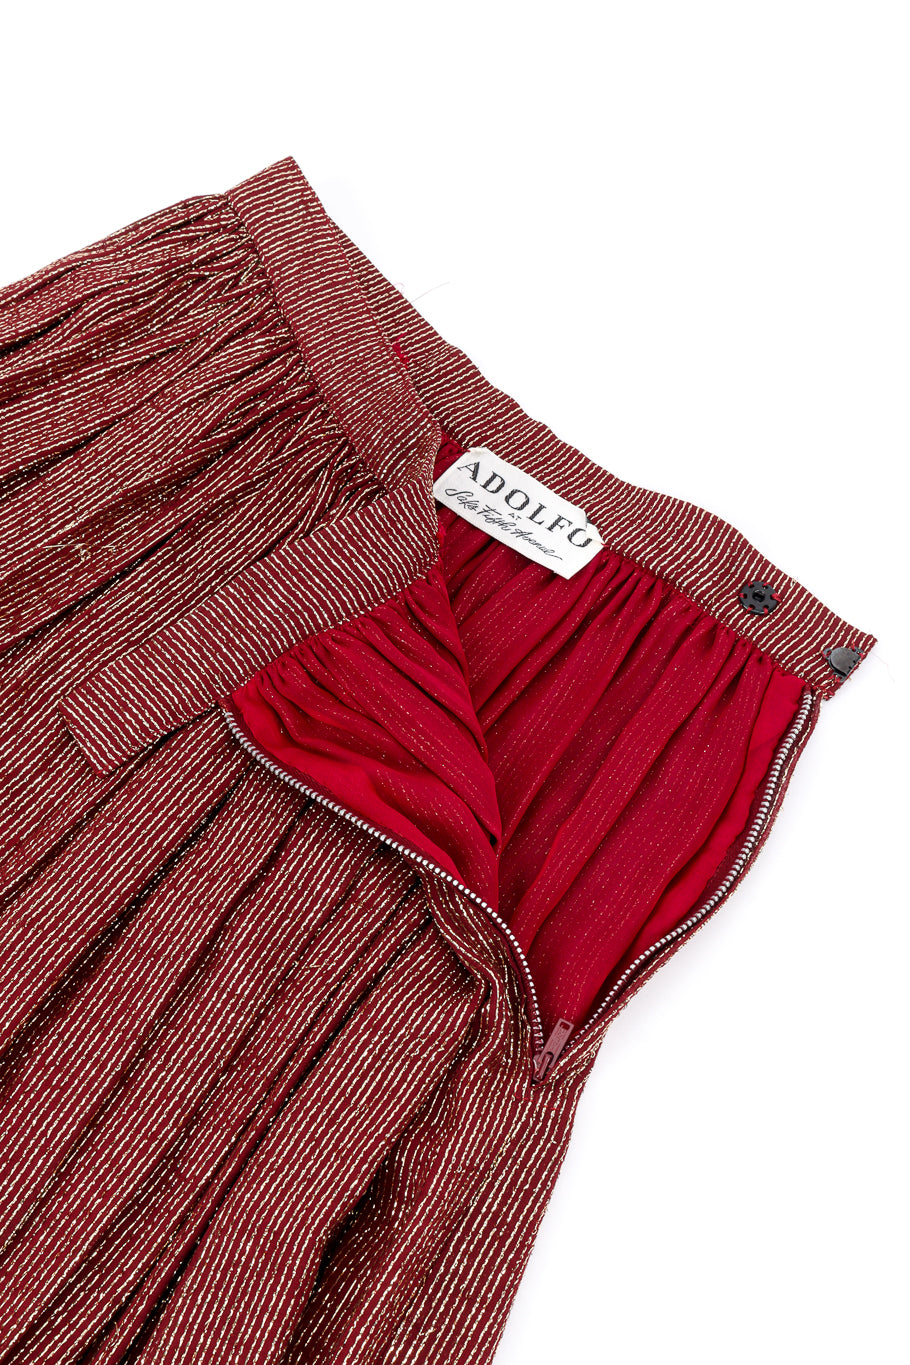 Vintage Adolfo Lamé Blouse & Pleated Skirt Set skirt side unzipped @recess la